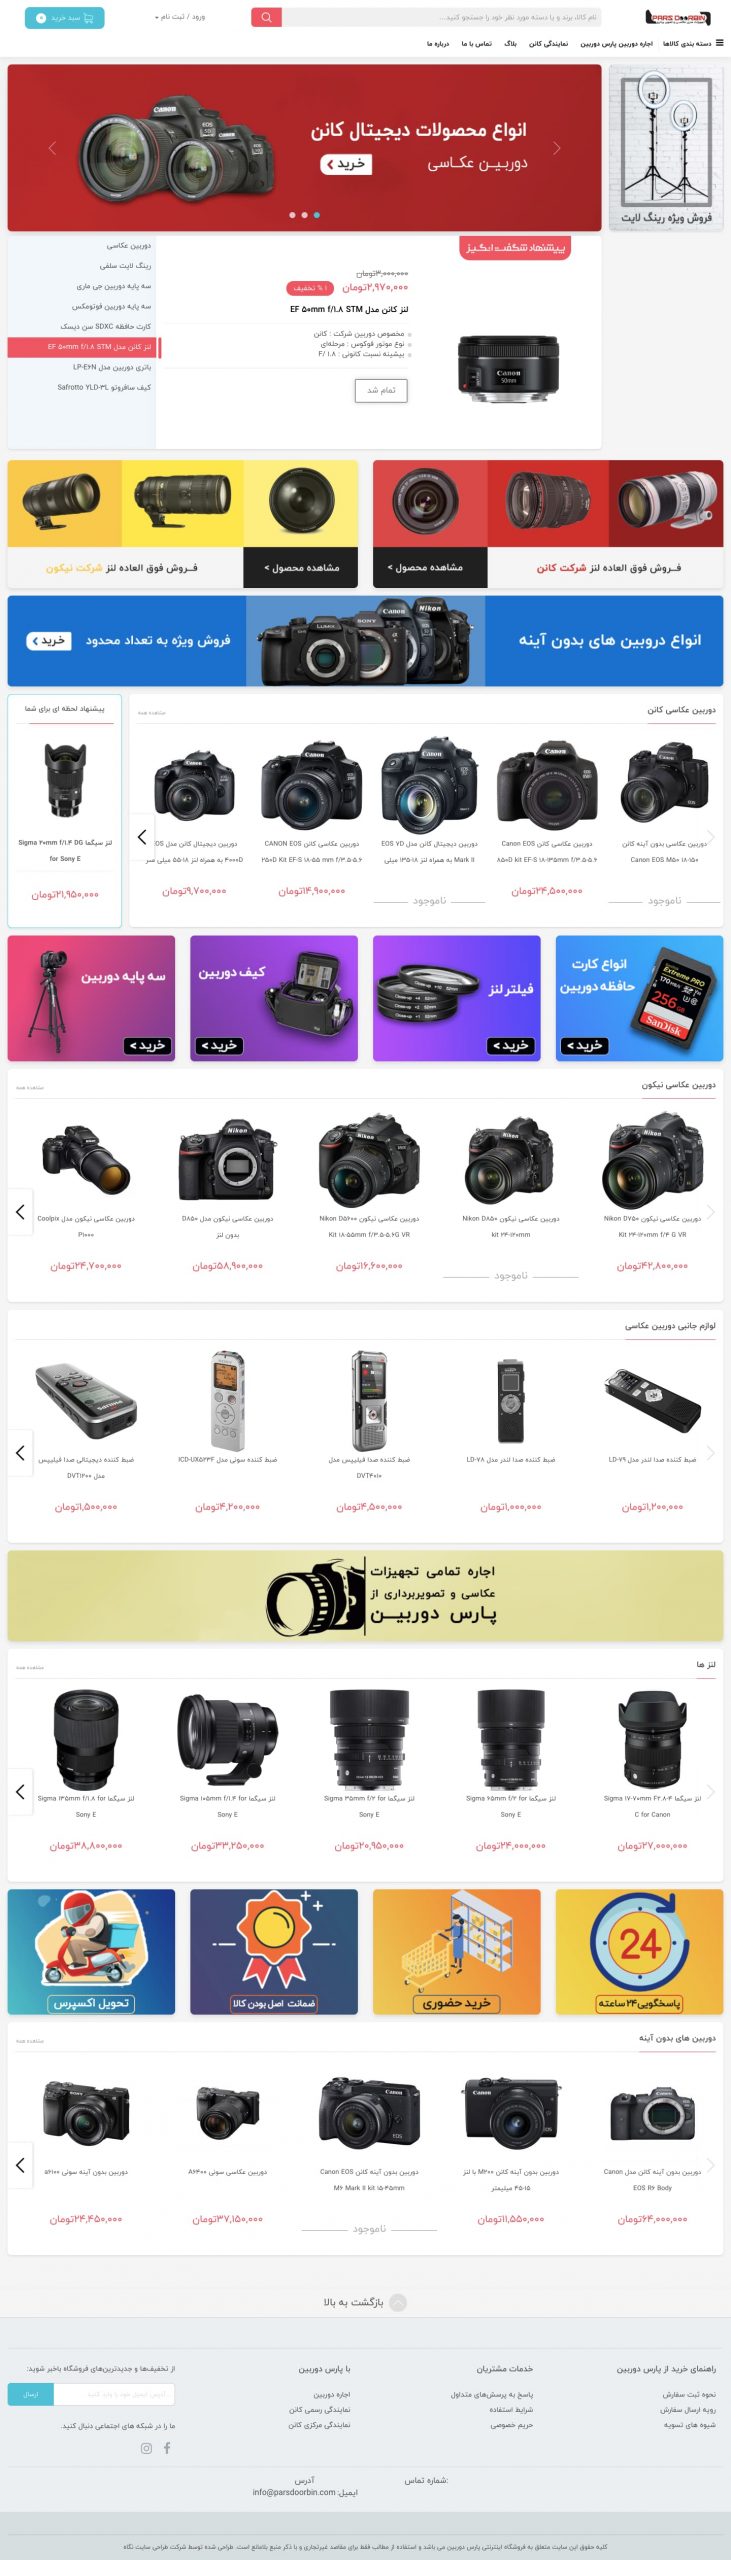 طراحی سایت فروشگاهی پارس دوربین